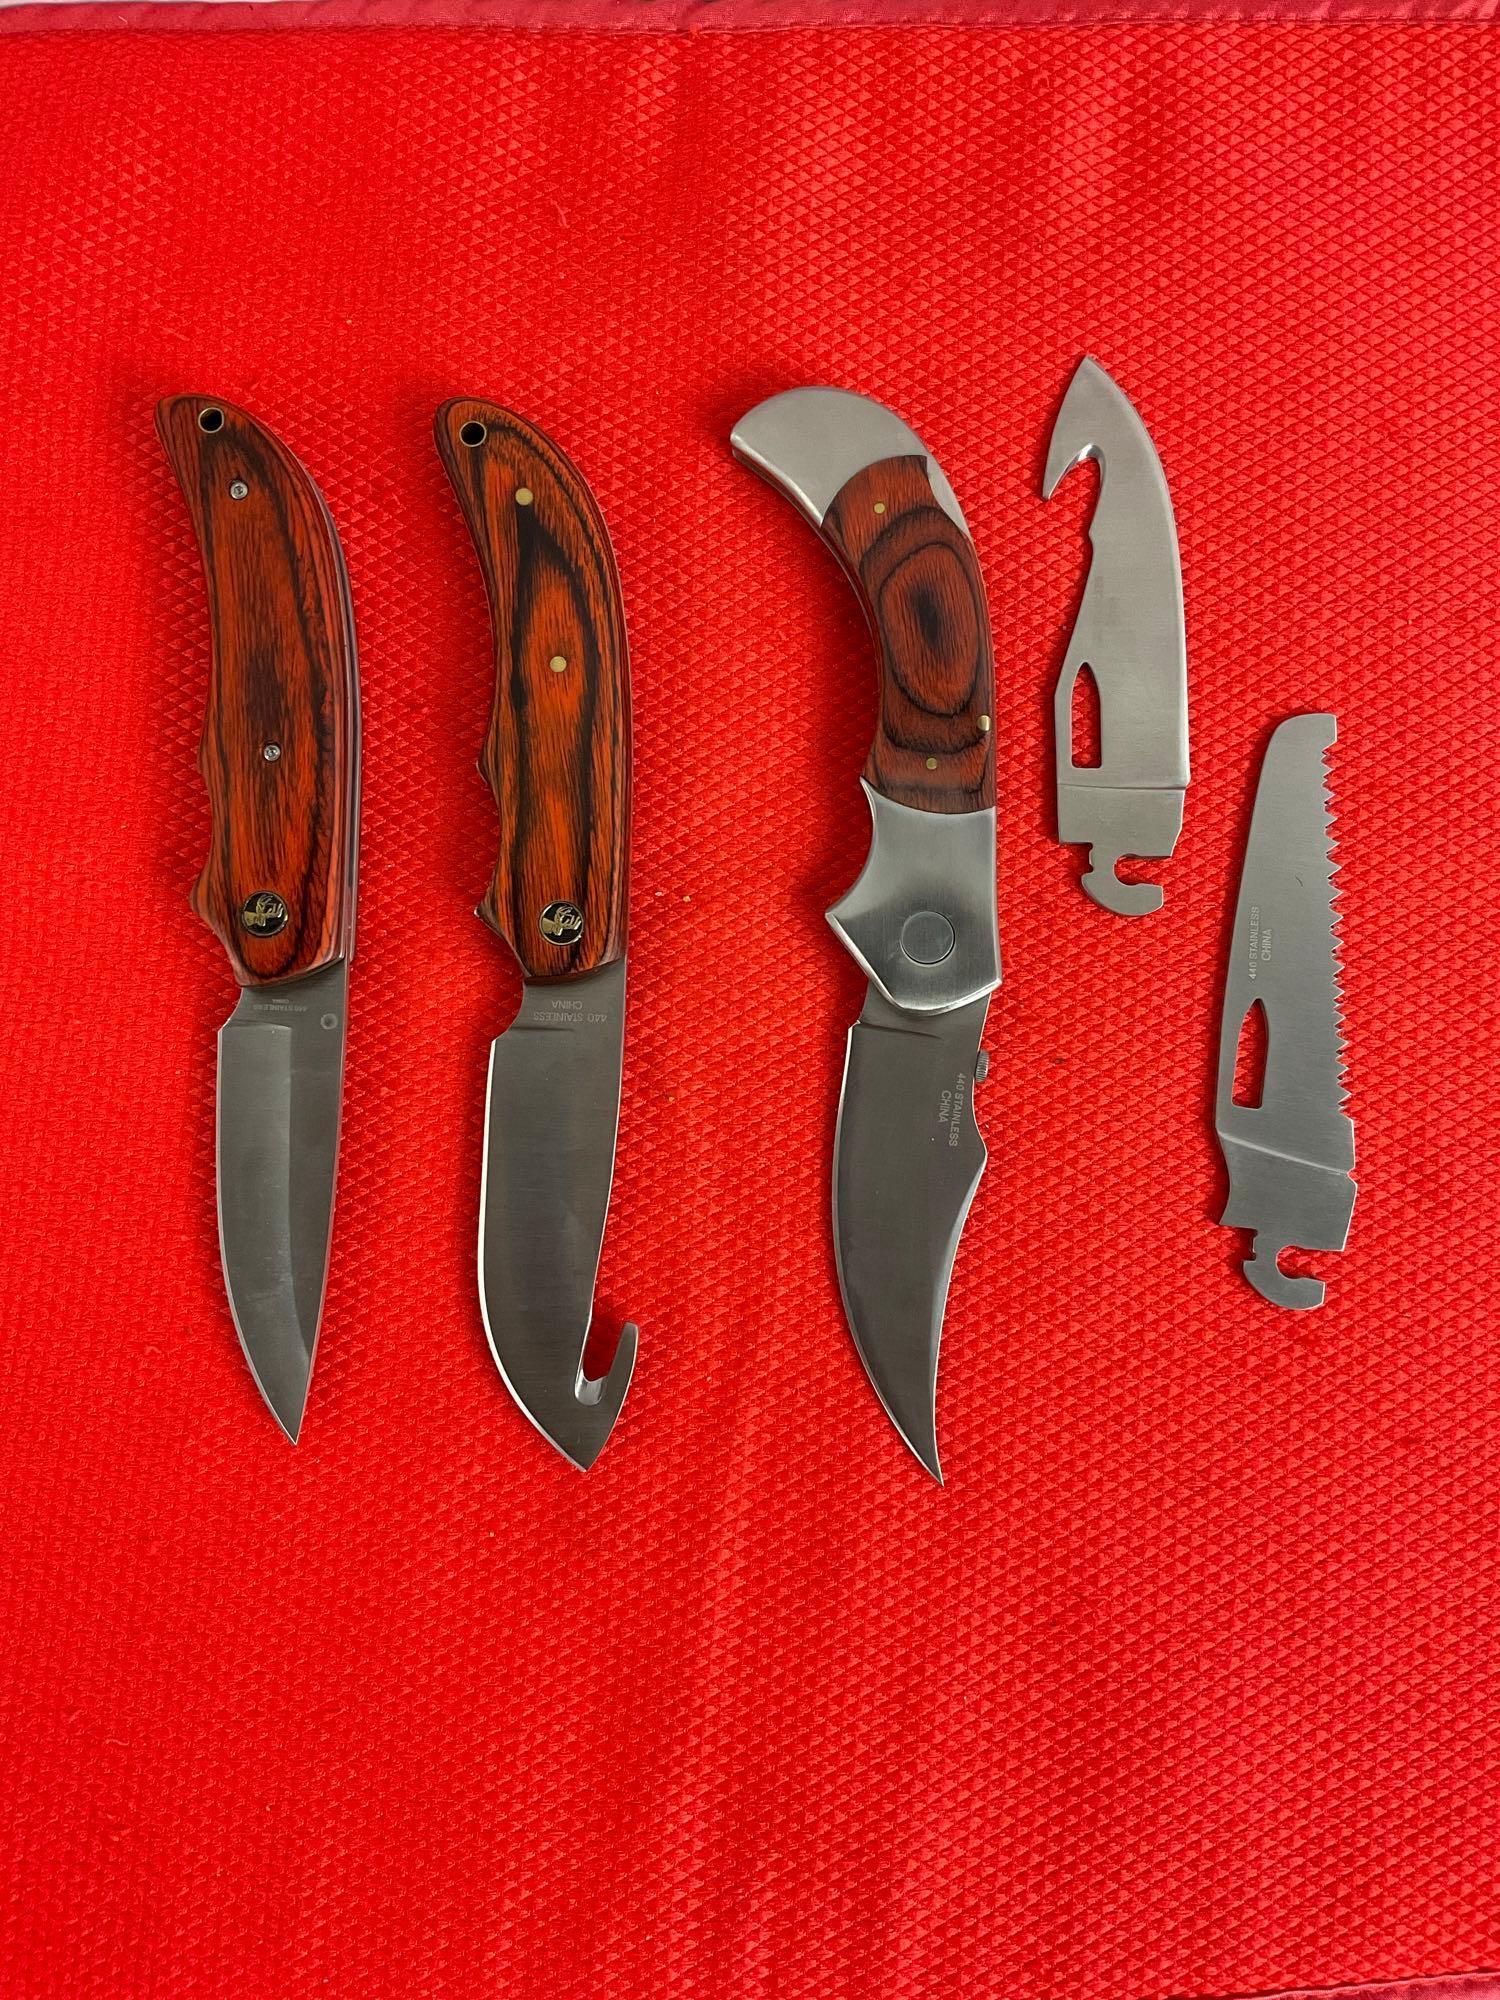 2 pcs Elk Ridge Steel Hunting Knives Model ER-13 & ER-055 w/ Nylon Sheathes. NIB. See pics.